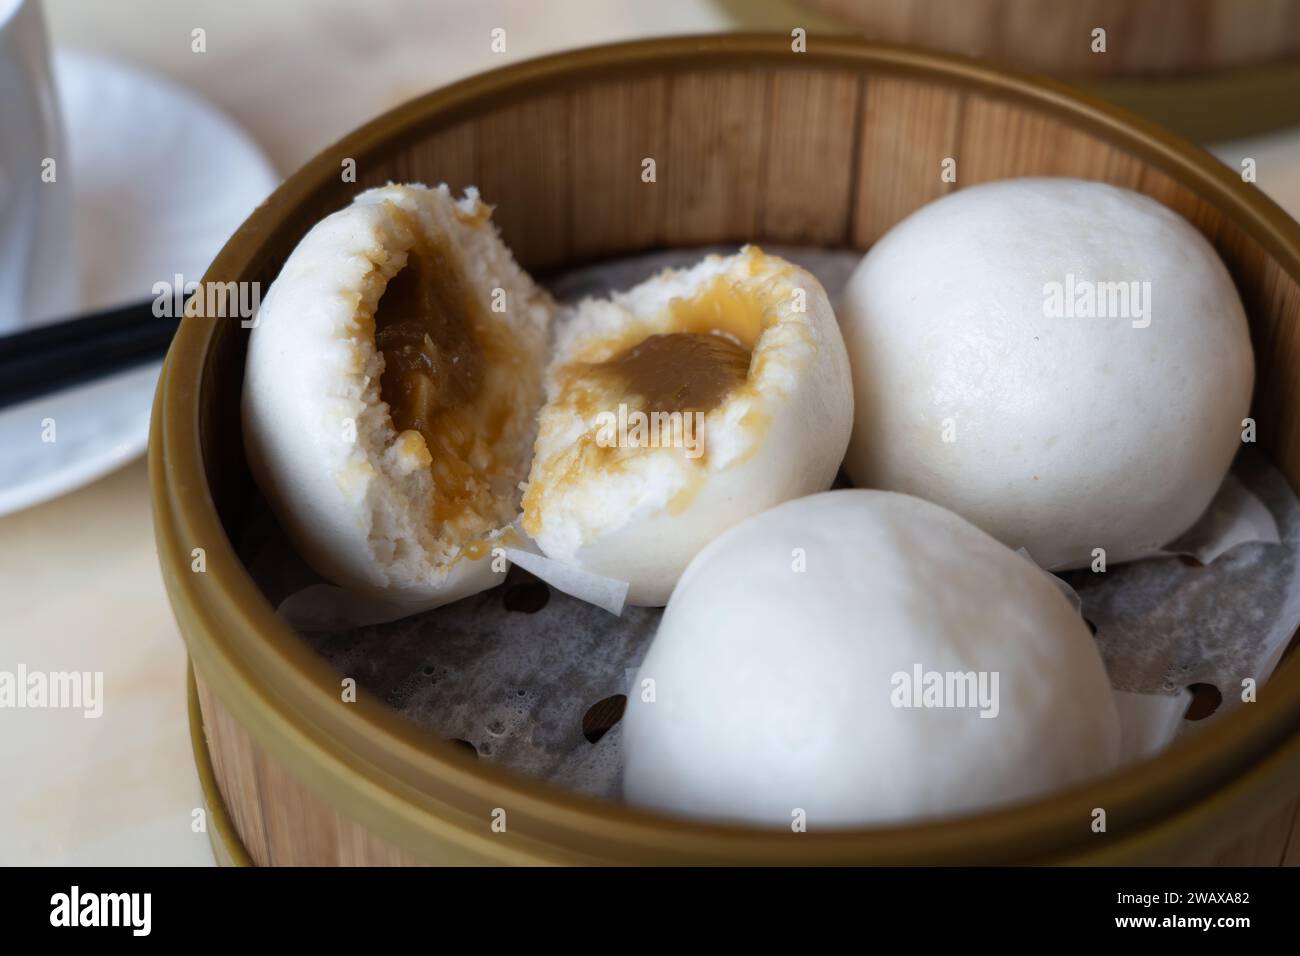 Dim sum cantonese - focaccine di bao lin yong (o yung) con pasta di semi di loto - servite in un piroscafo di bambù, Regno Unito Foto Stock